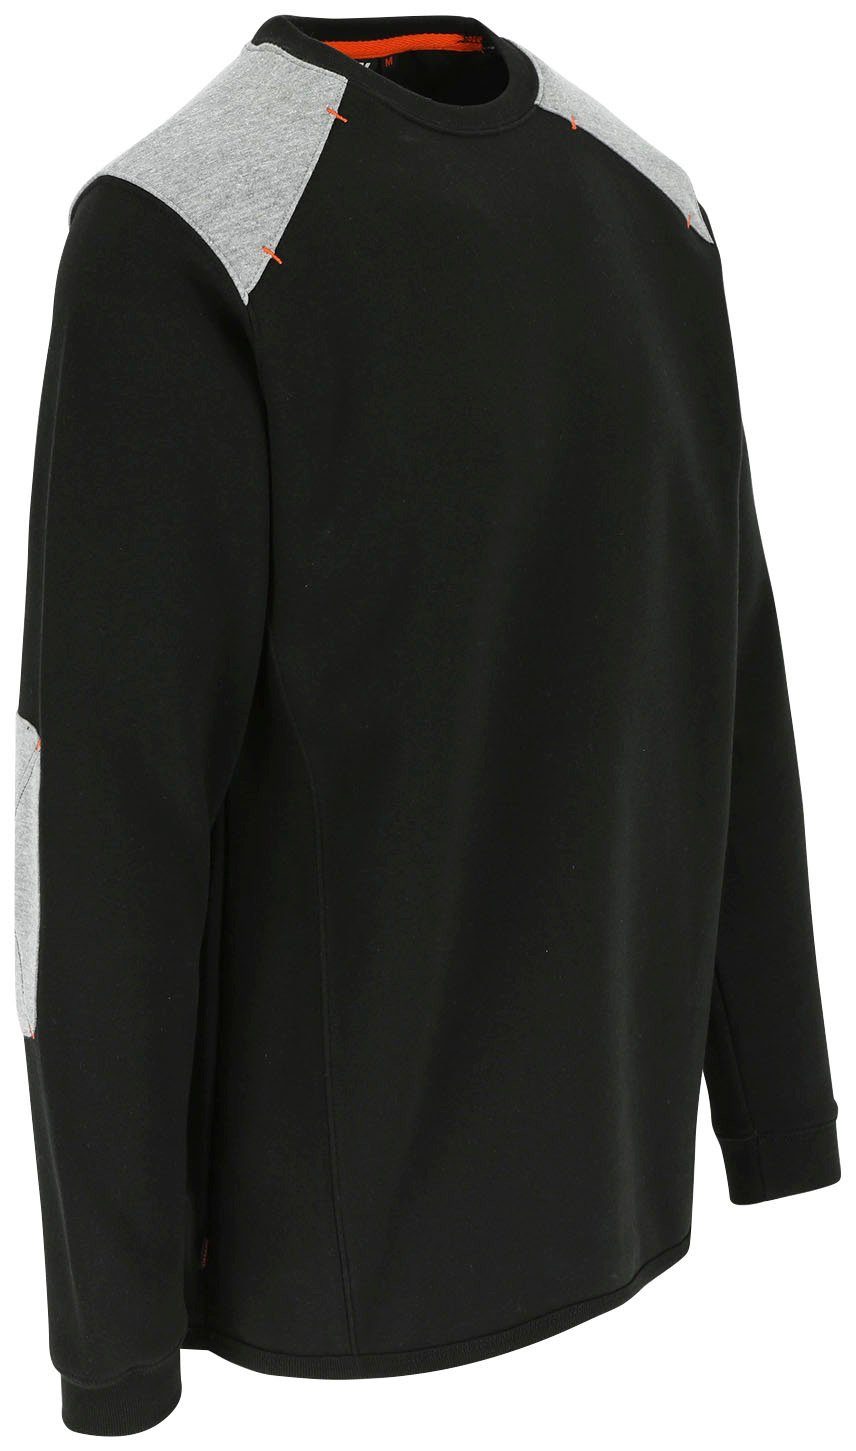 Herock Rundhalspullover Artemis Sweater - Langes Tragegefühl - schwarz Rückenteil Rippstrick weiches Kragen